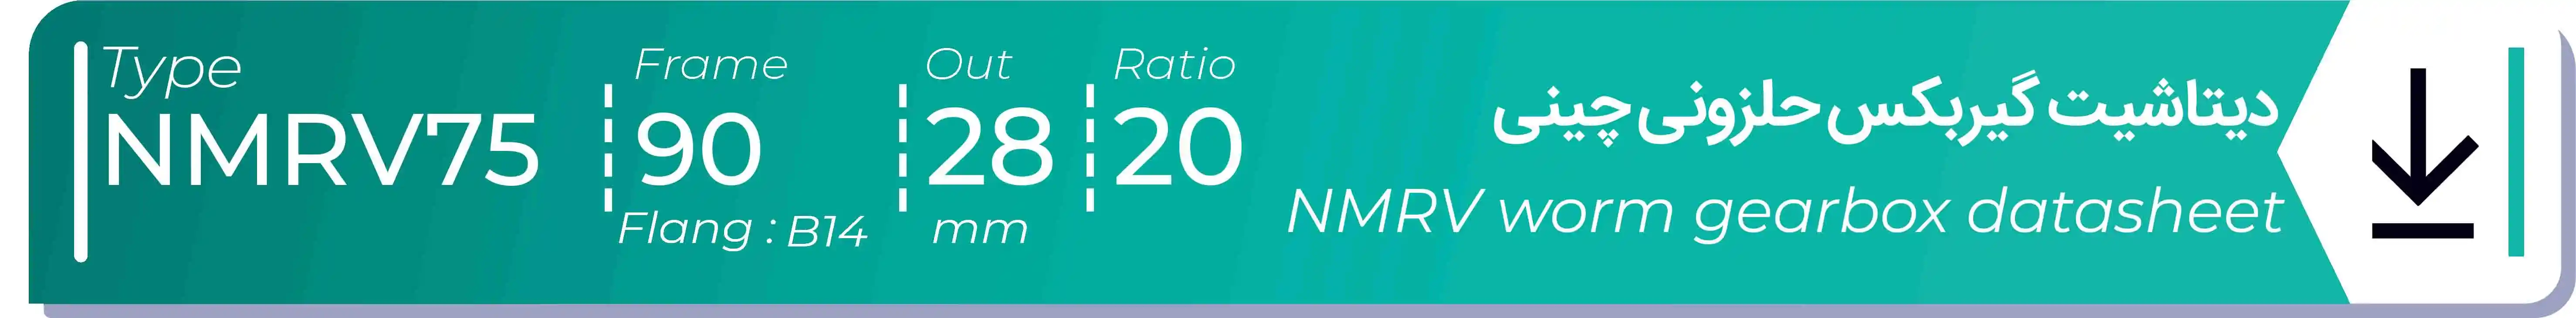  دیتاشیت و مشخصات فنی گیربکس حلزونی چینی   NMRV75  -  با خروجی 28- میلی متر و نسبت20 و فریم 90